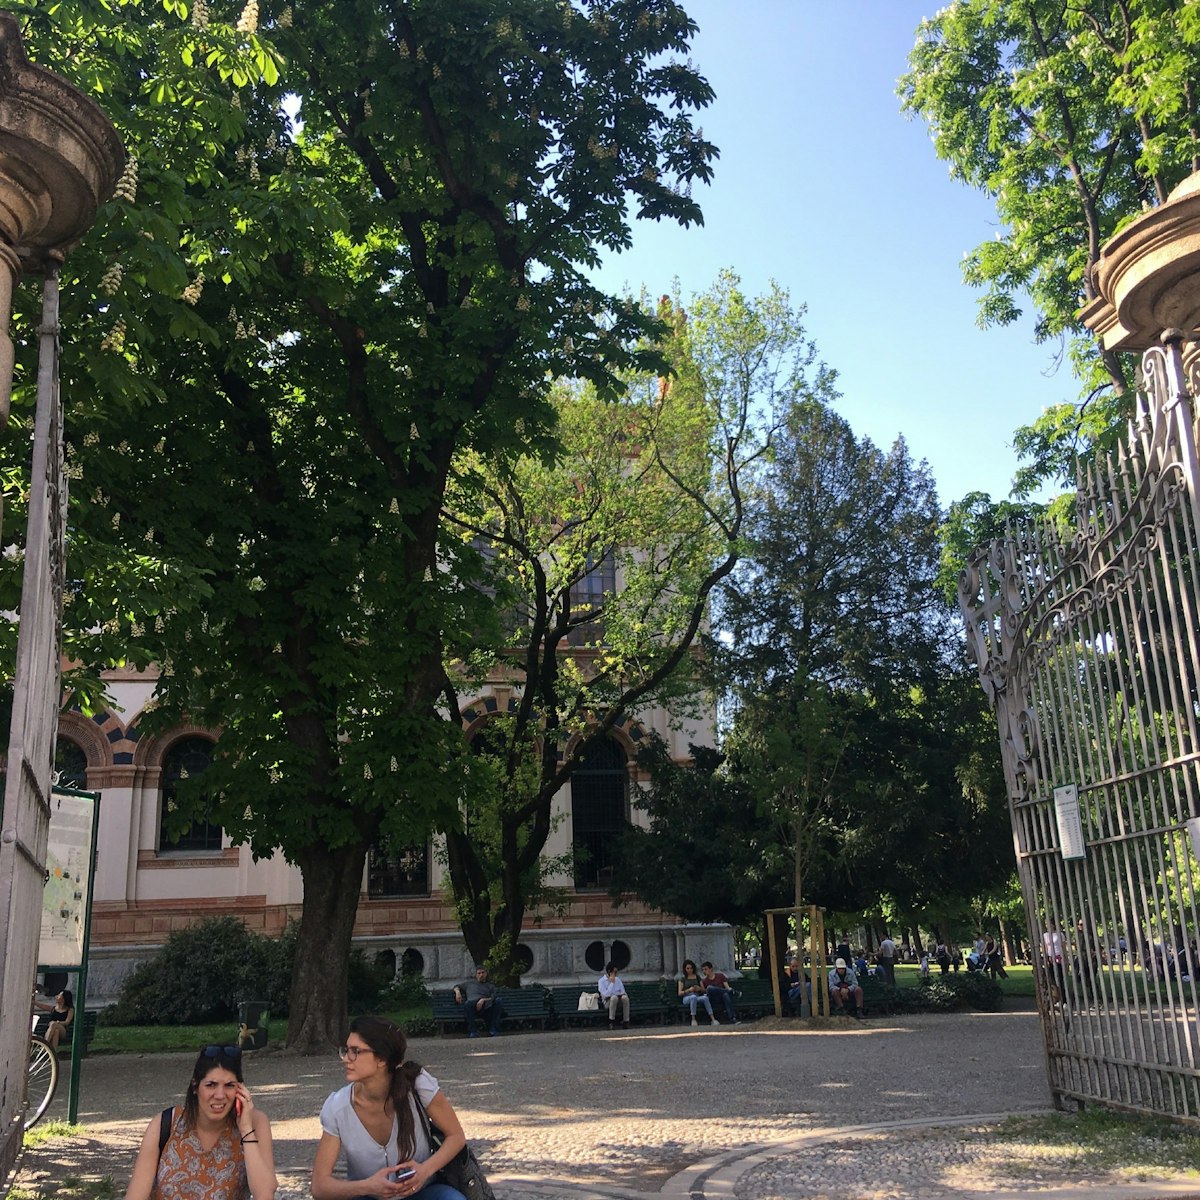 The Giardini Pubblici Indro Montanelli entrance.